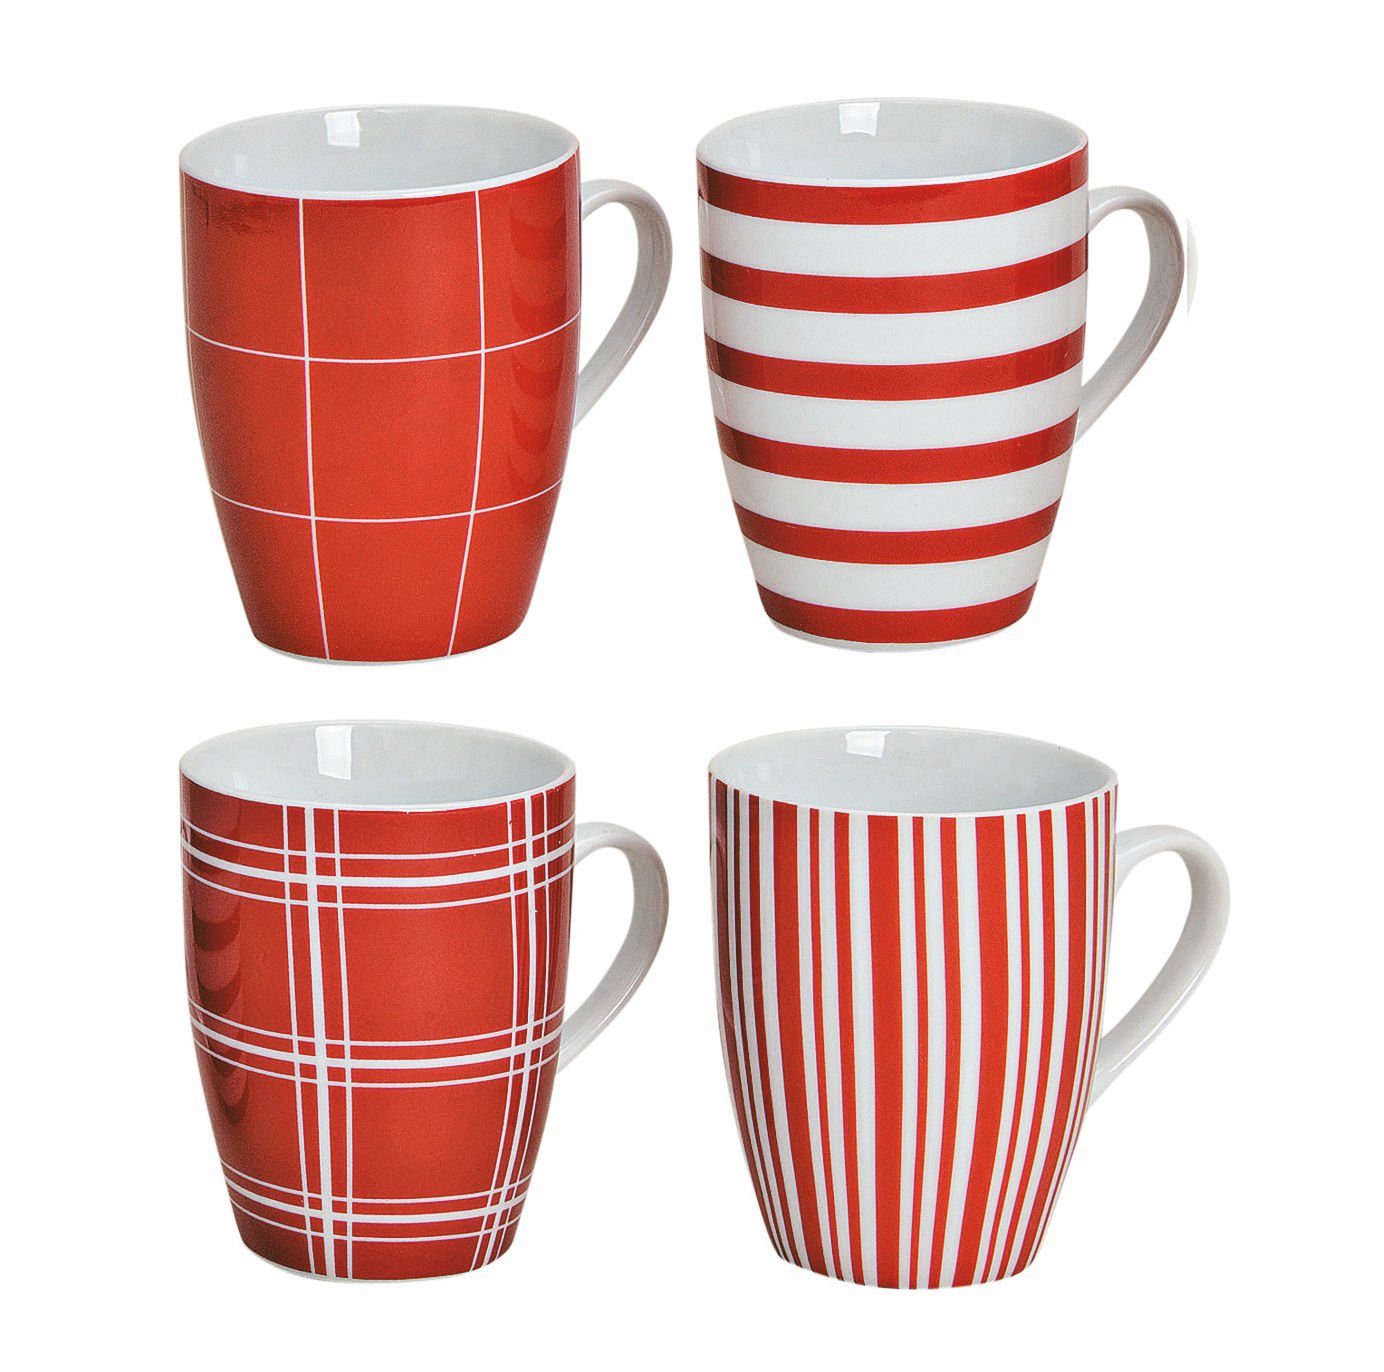 Spetebo Tafelservice Porzellan Kaffeebecher 4er Set - rot / weiß (4-tlg), 6 Personen, Porzellan, Kaffee und Tee Tassen für ca. 250 ml